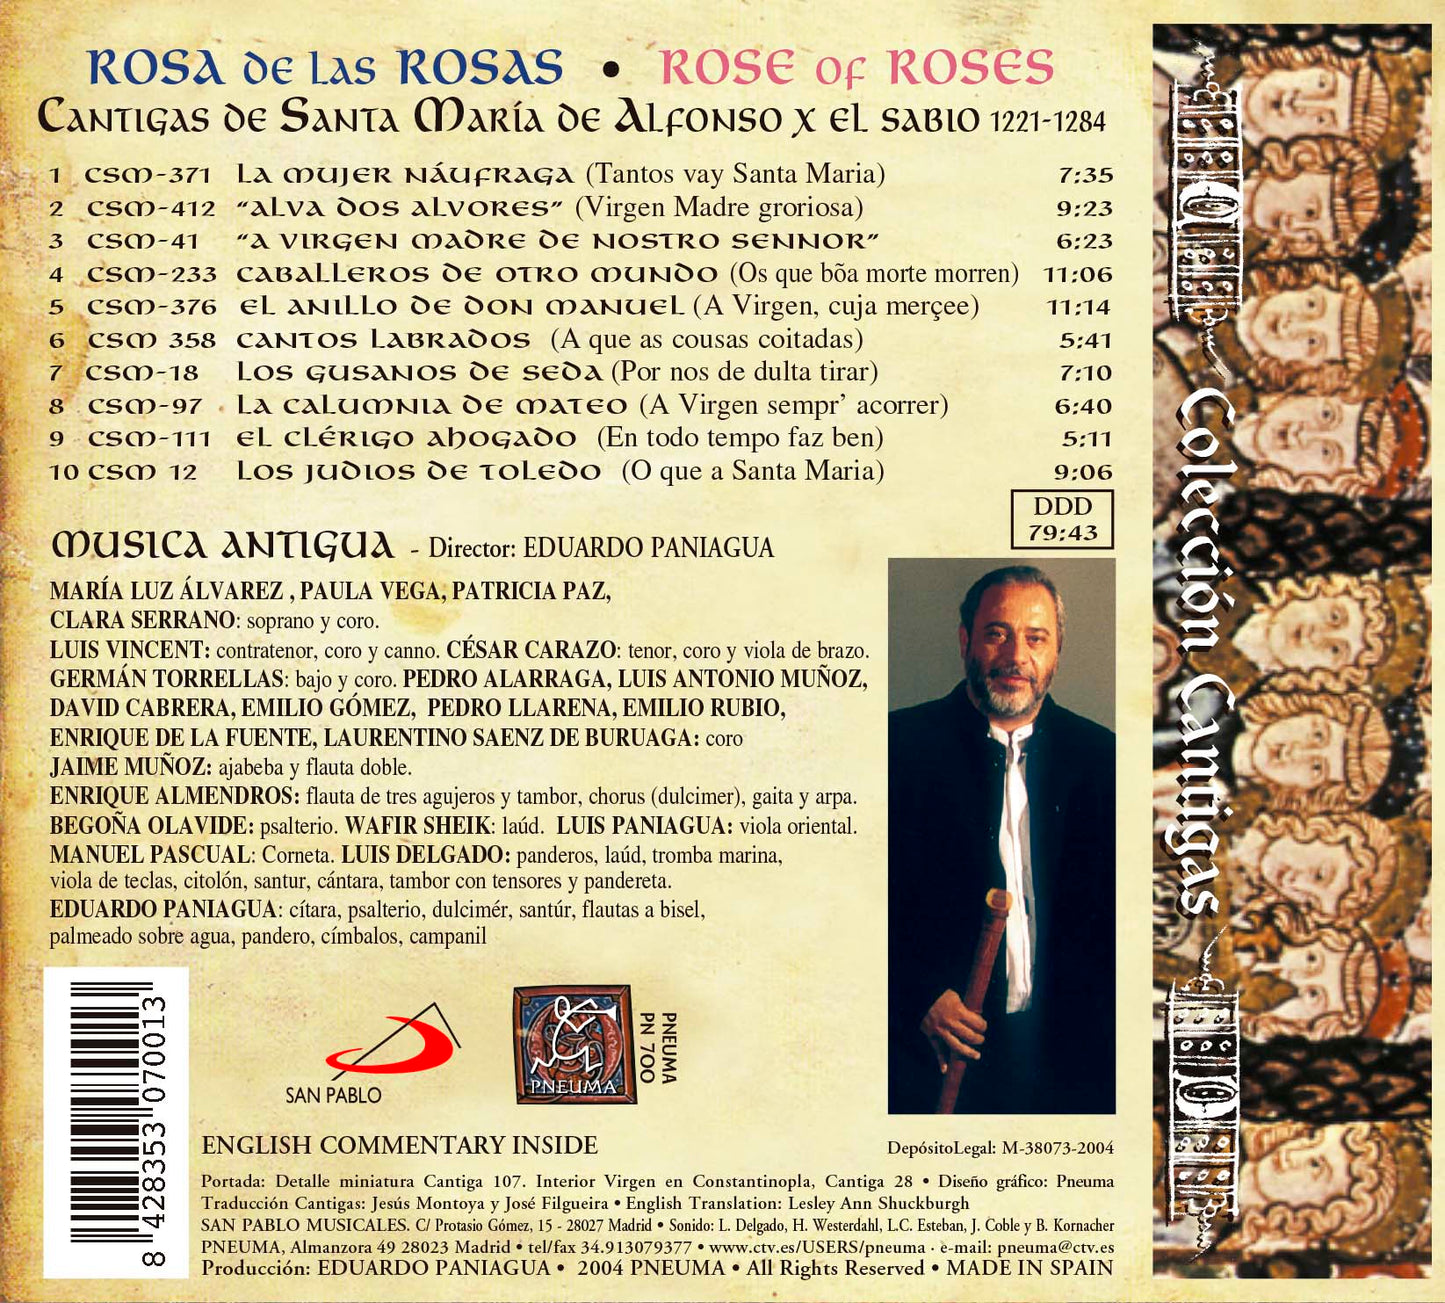 PN 700 ROSA DE LAS ROSAS